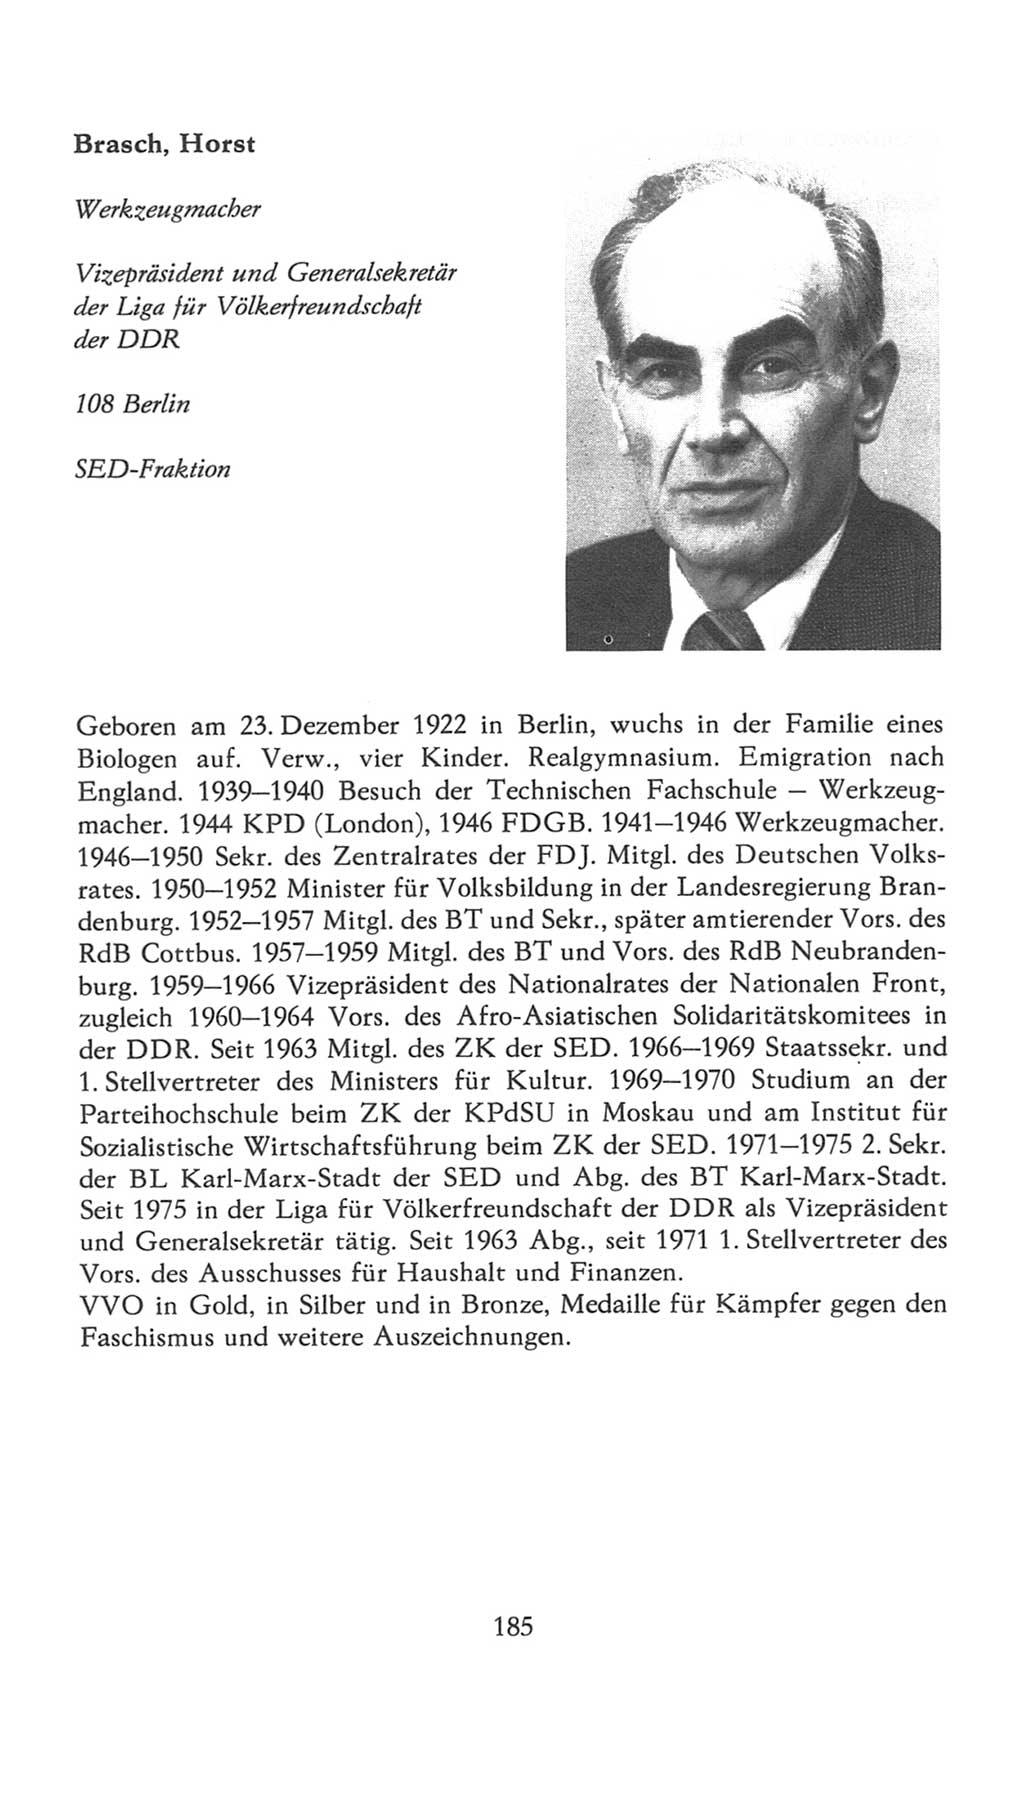 Volkskammer (VK) der Deutschen Demokratischen Republik (DDR), 7. Wahlperiode 1976-1981, Seite 185 (VK. DDR 7. WP. 1976-1981, S. 185)